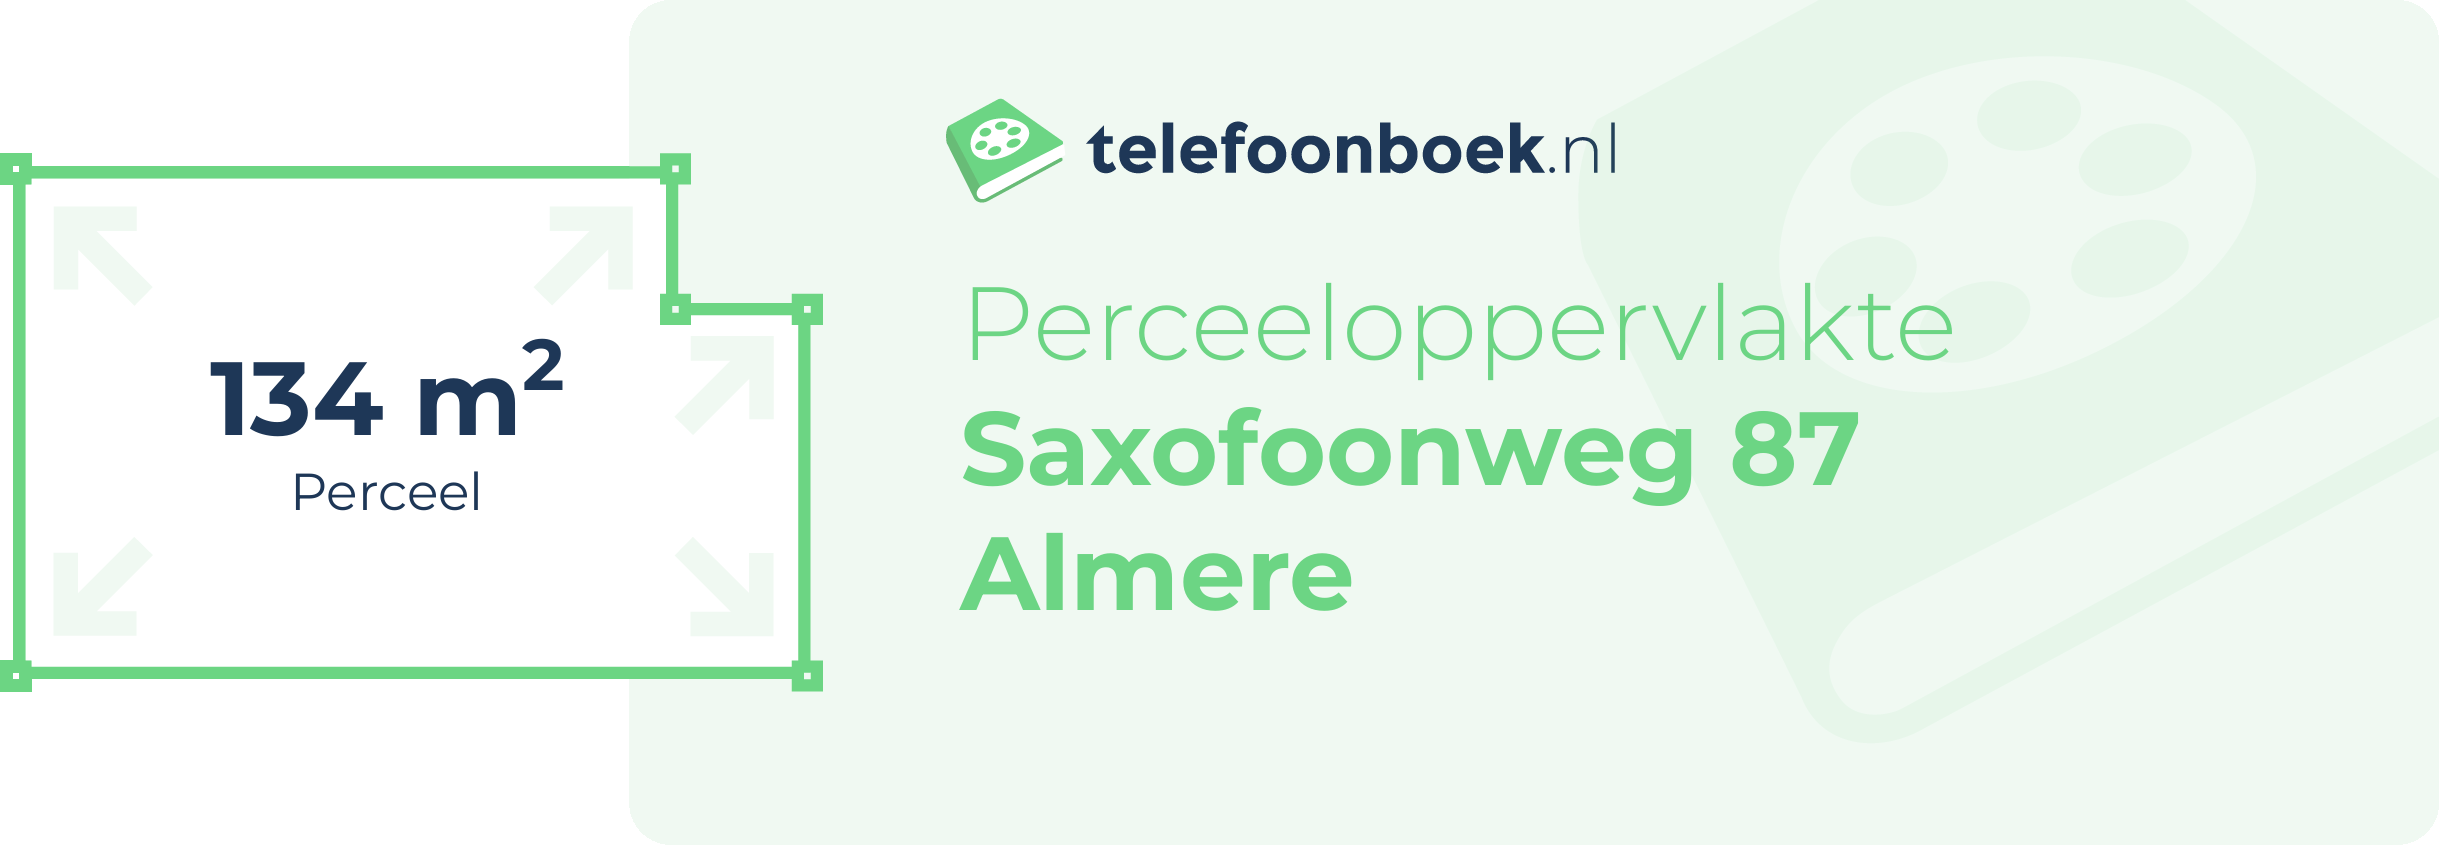 Perceeloppervlakte Saxofoonweg 87 Almere